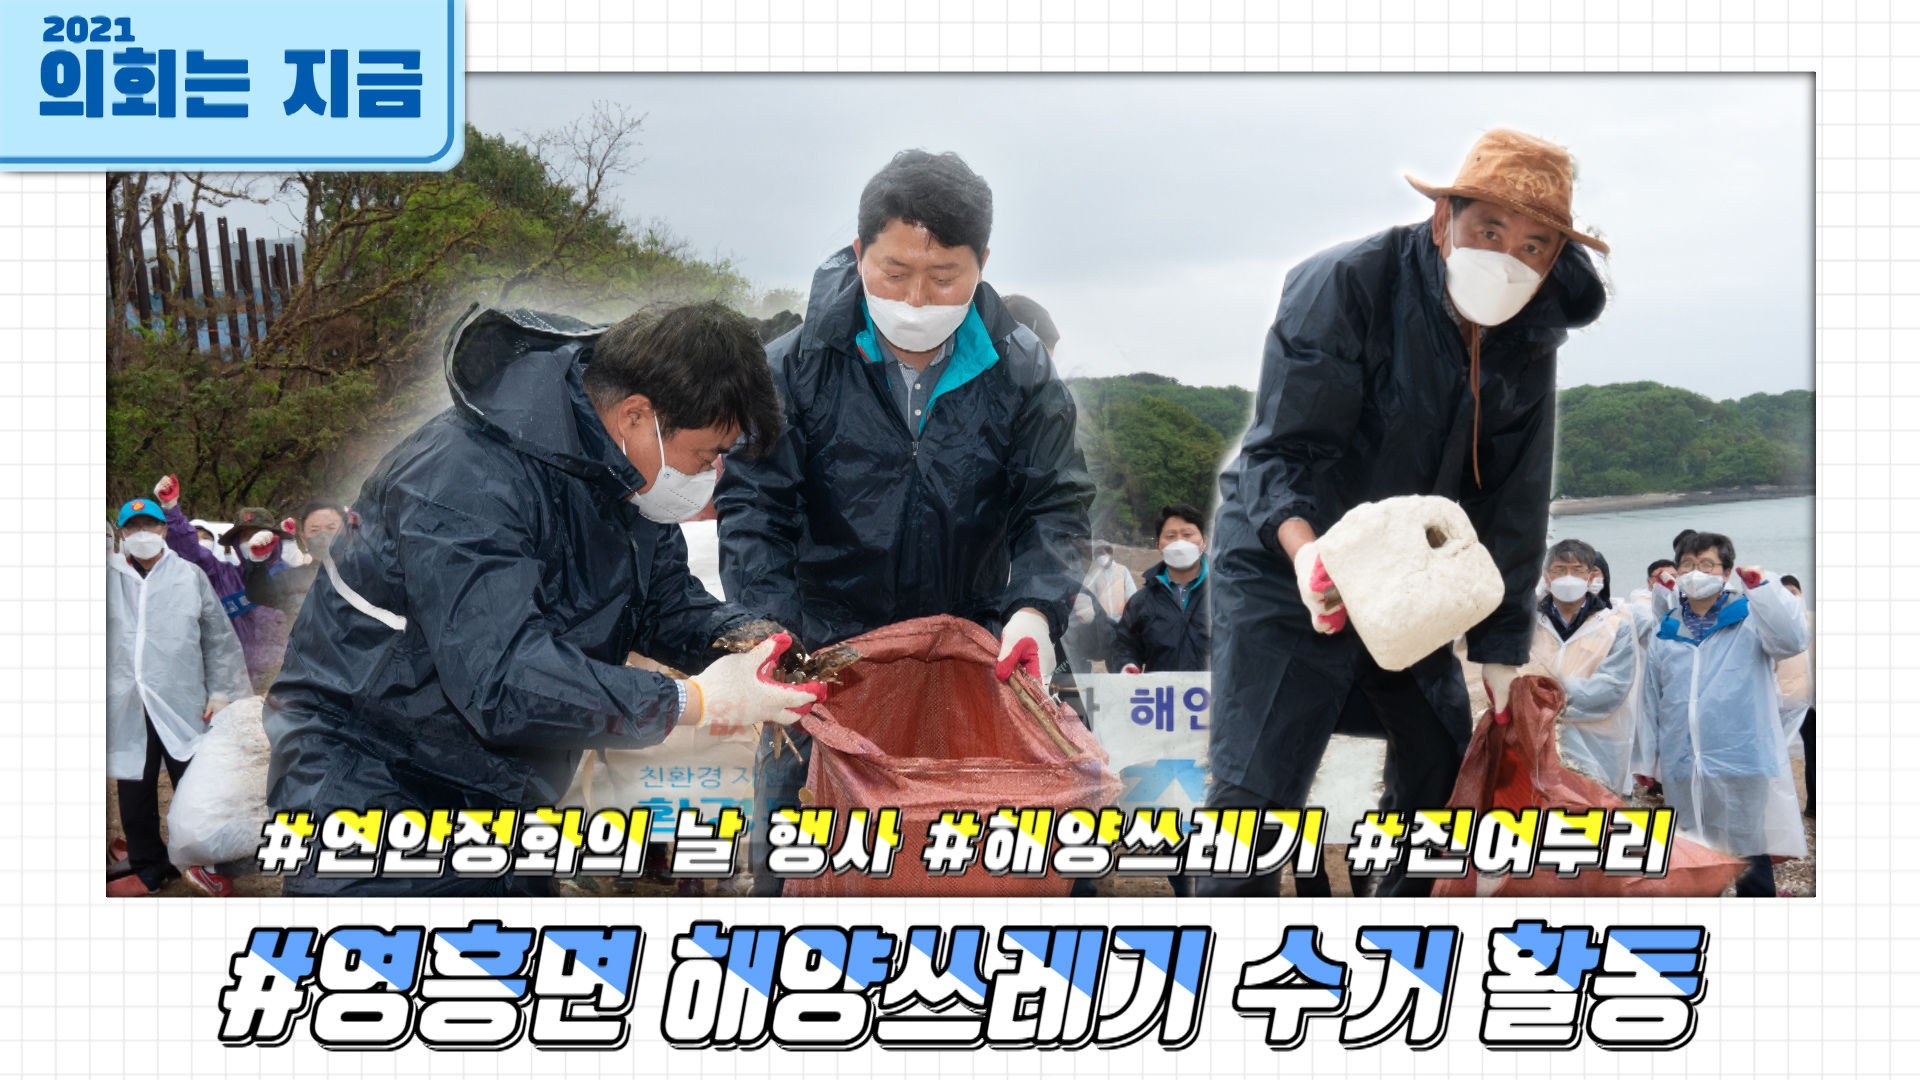 영흥면 해양쓰레기 수거 활동 사진